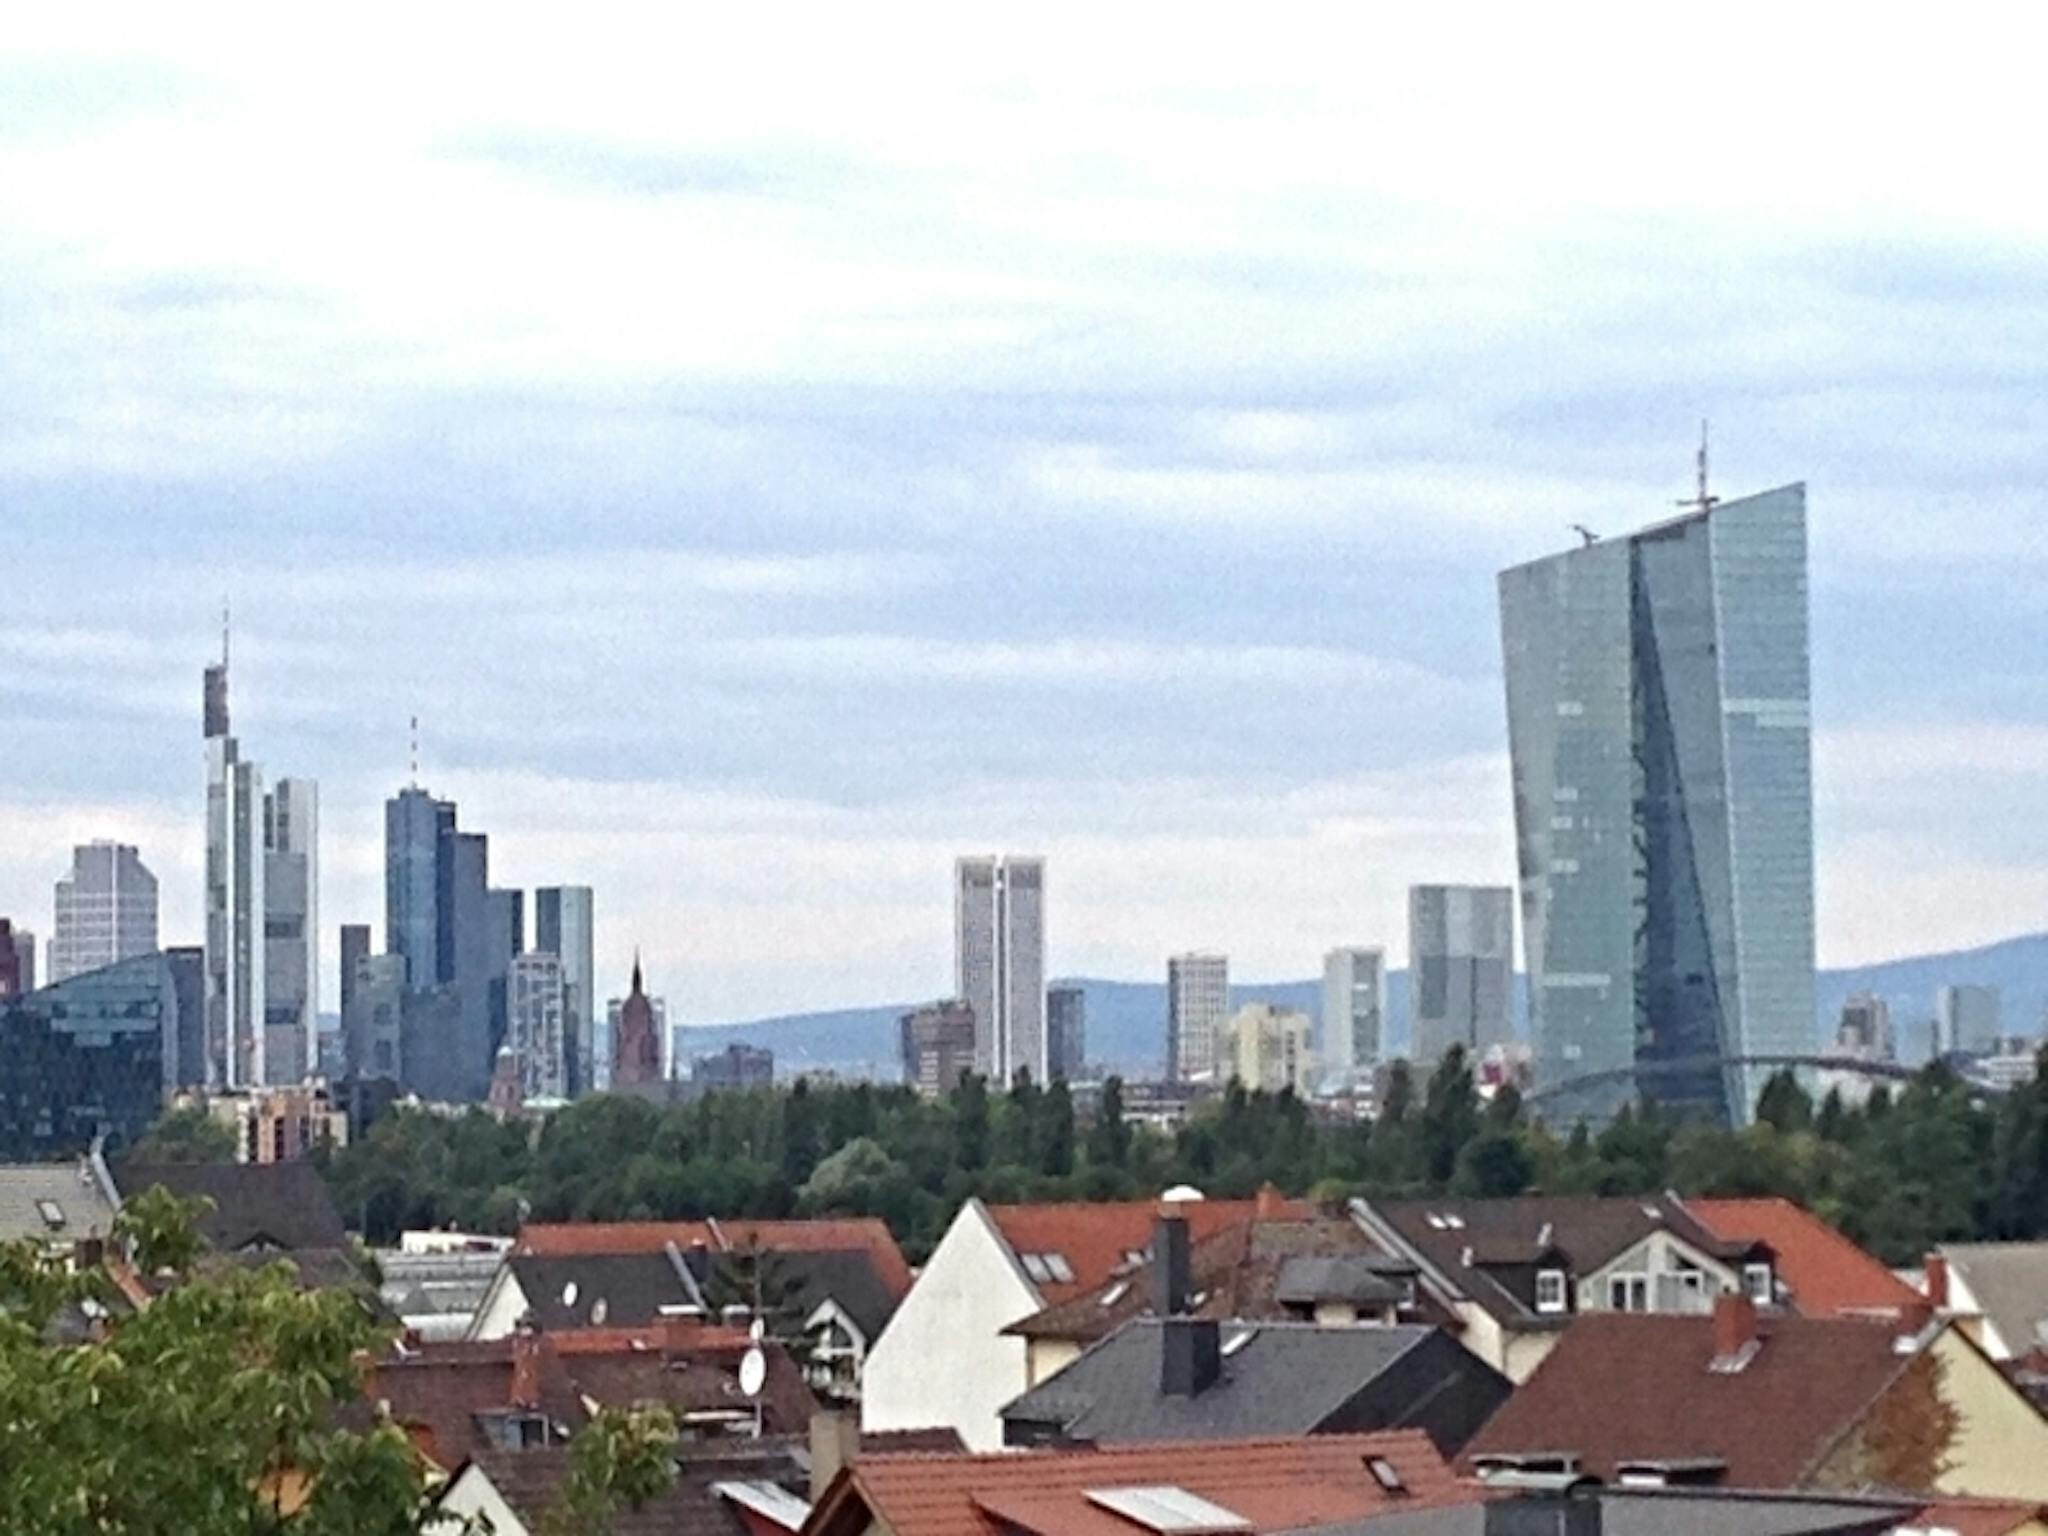 Offenbacher Landstraße, Frankfurt am Main